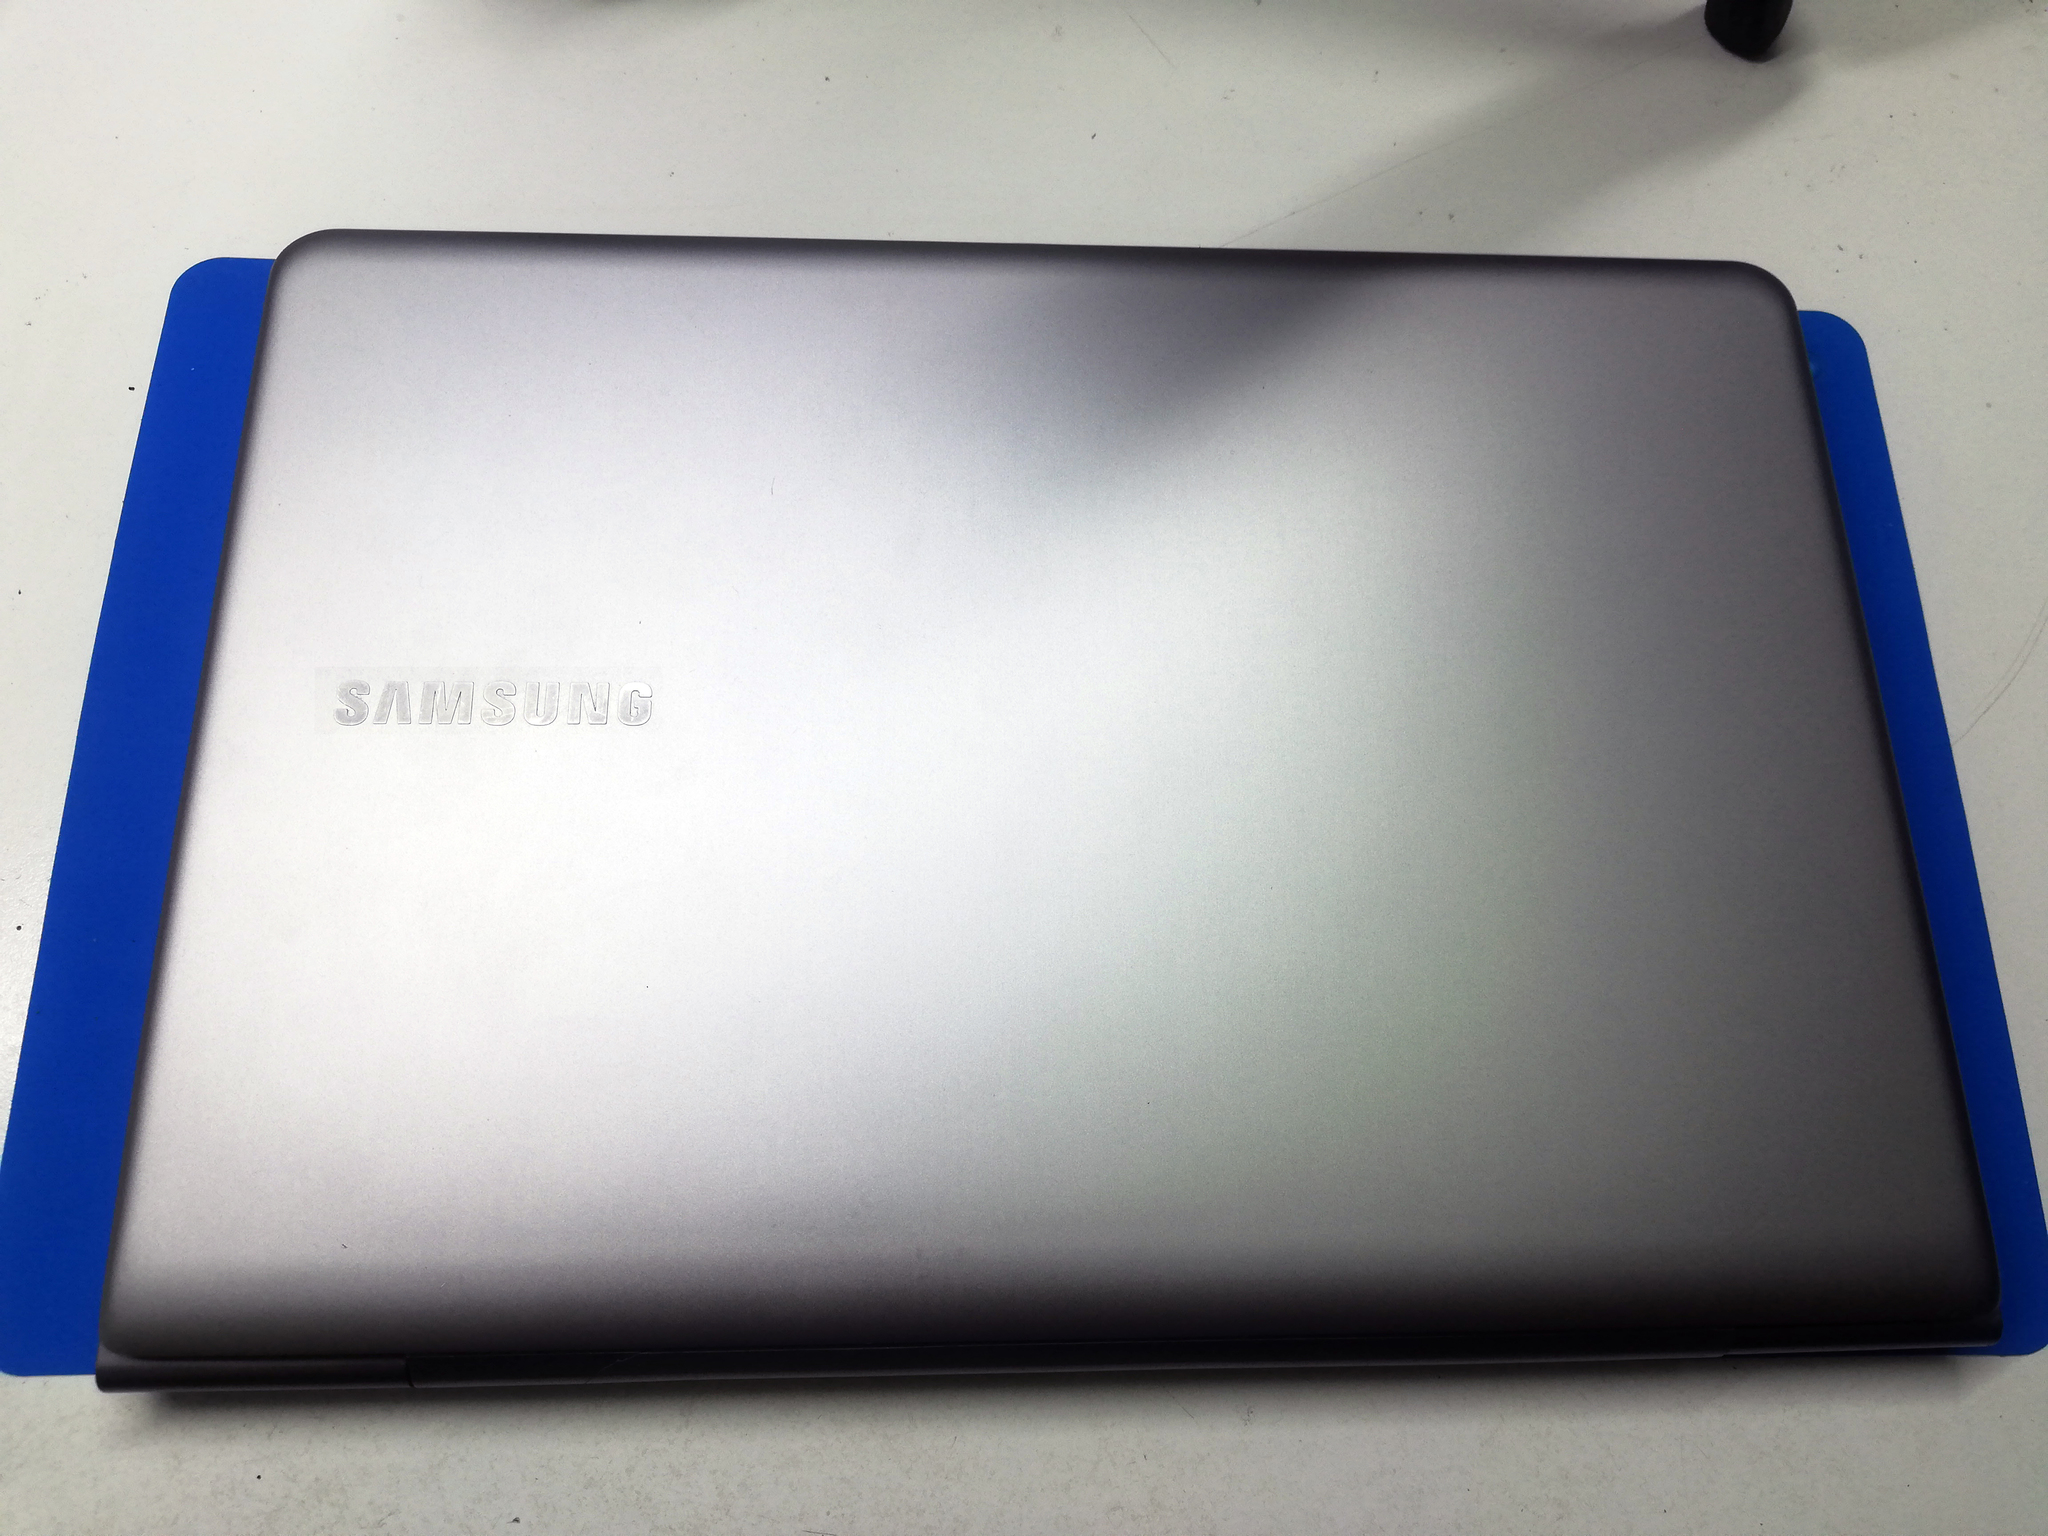 Купить Ноутбук Samsung R525 В Украине